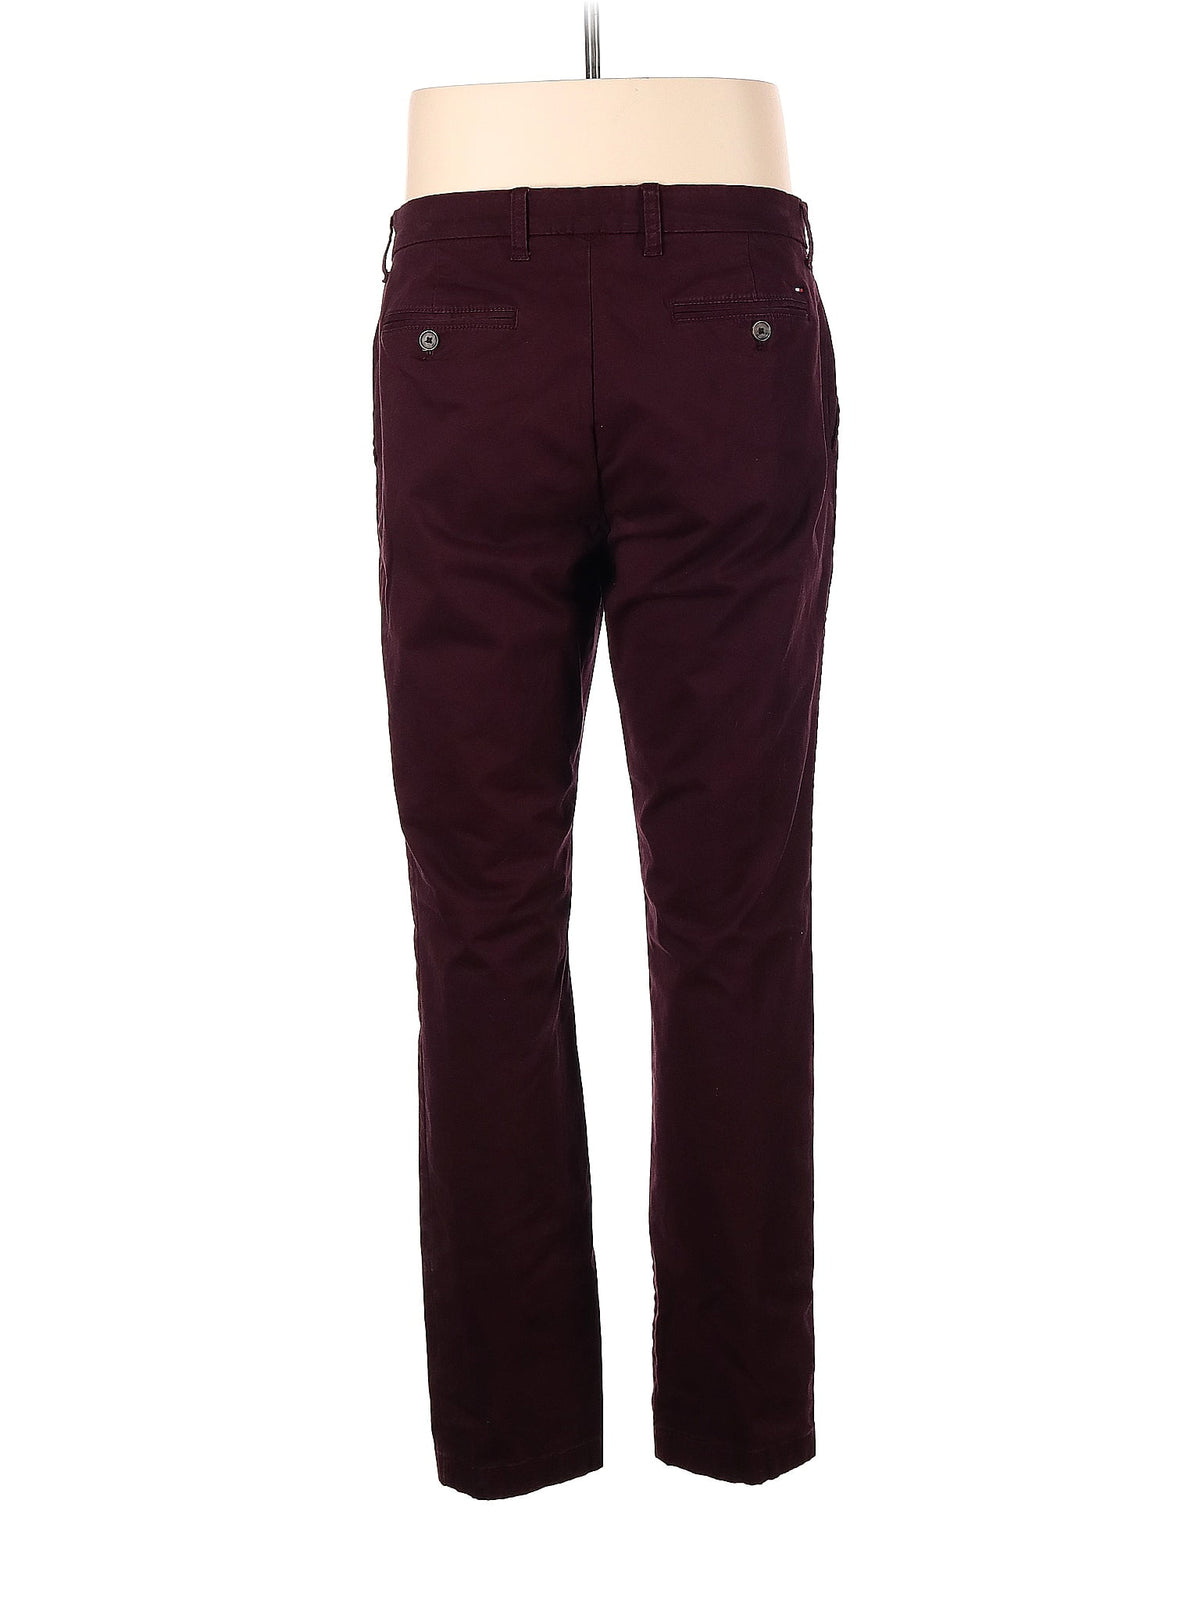 Khaki/Chino Pants size - 34 (W34 L32)